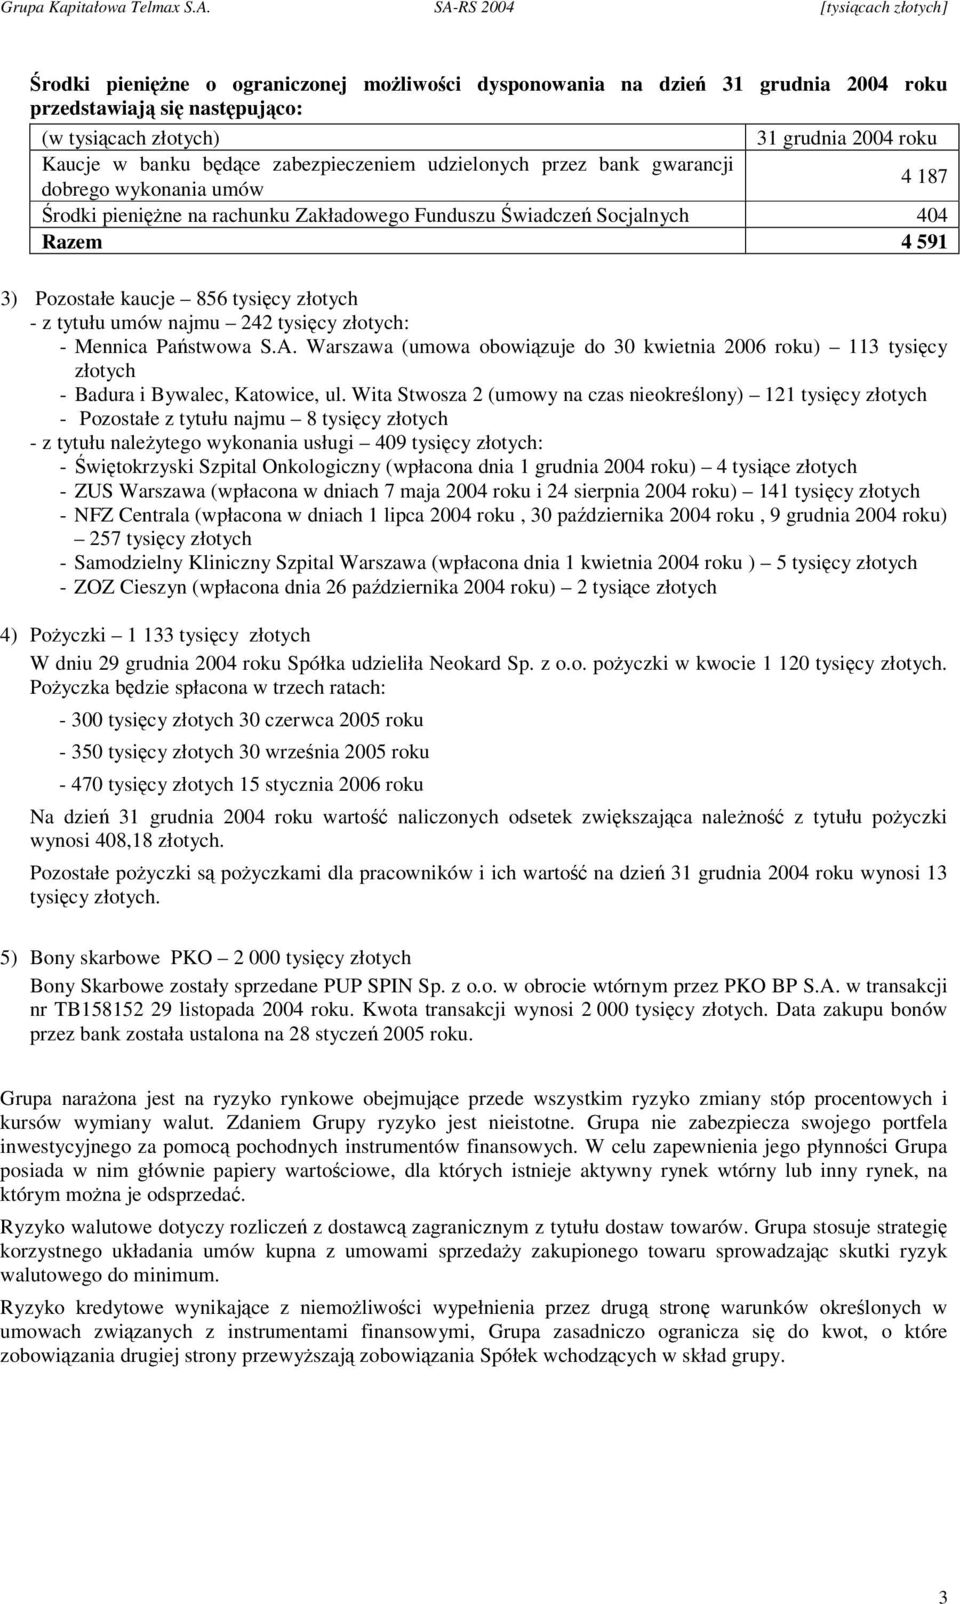 Warszawa (umowa obowizuje do 30 kwietnia 2006 roku) 113 tysicy złotych - Badura i Bywalec, Katowice, ul.